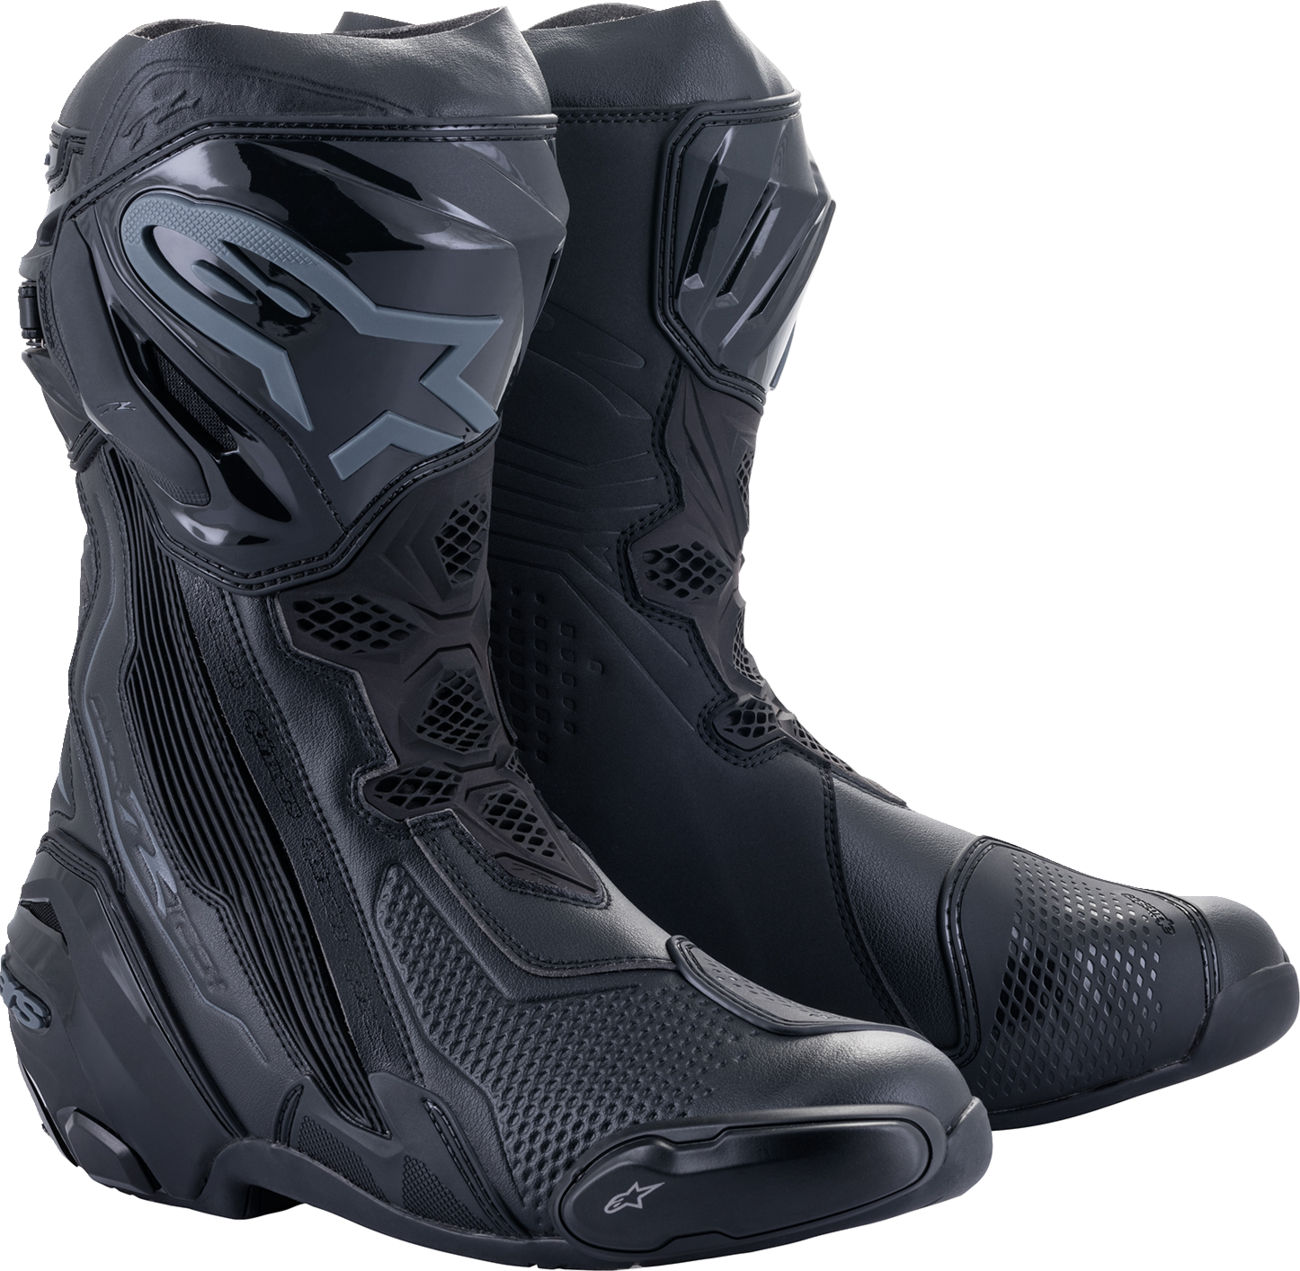 ALPINESTARS Supertech R Boots - Black - US 9.5 / EU 44 2220021-1100-44